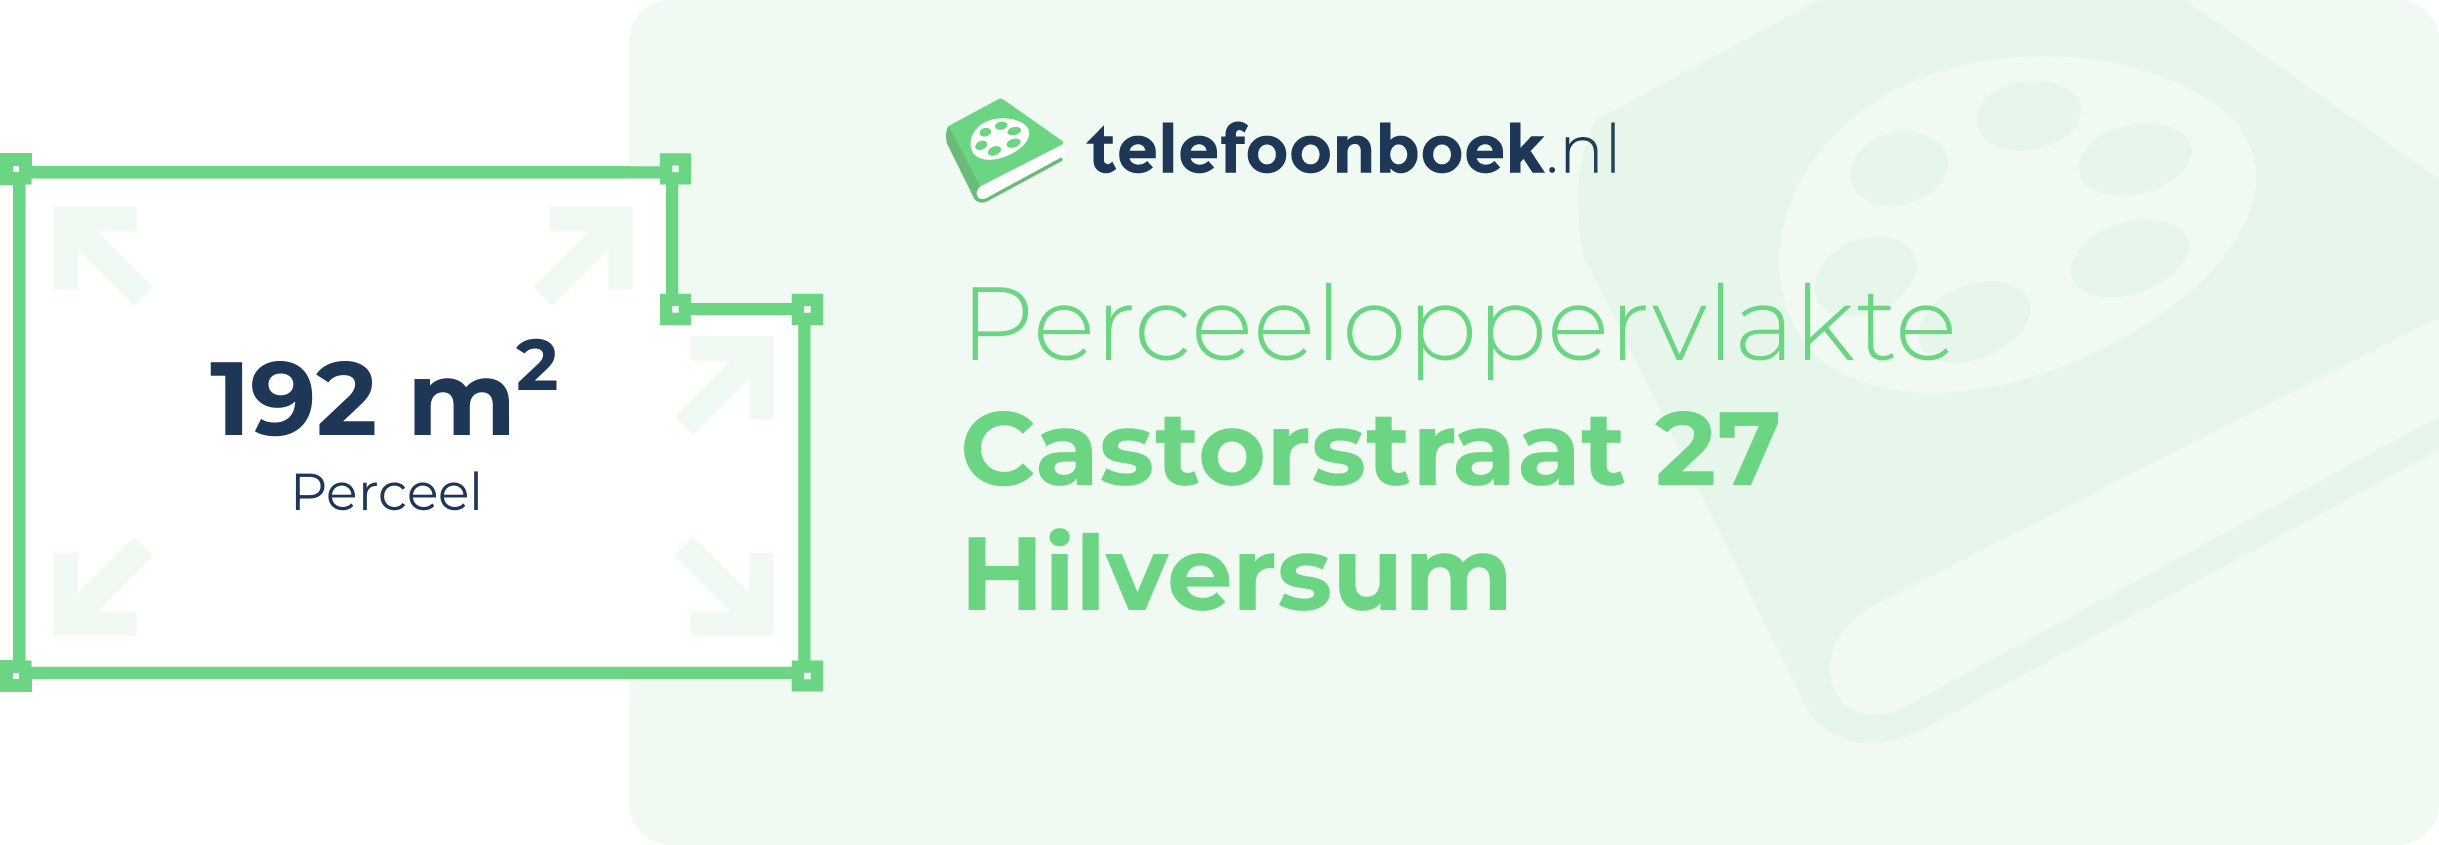 Perceeloppervlakte Castorstraat 27 Hilversum